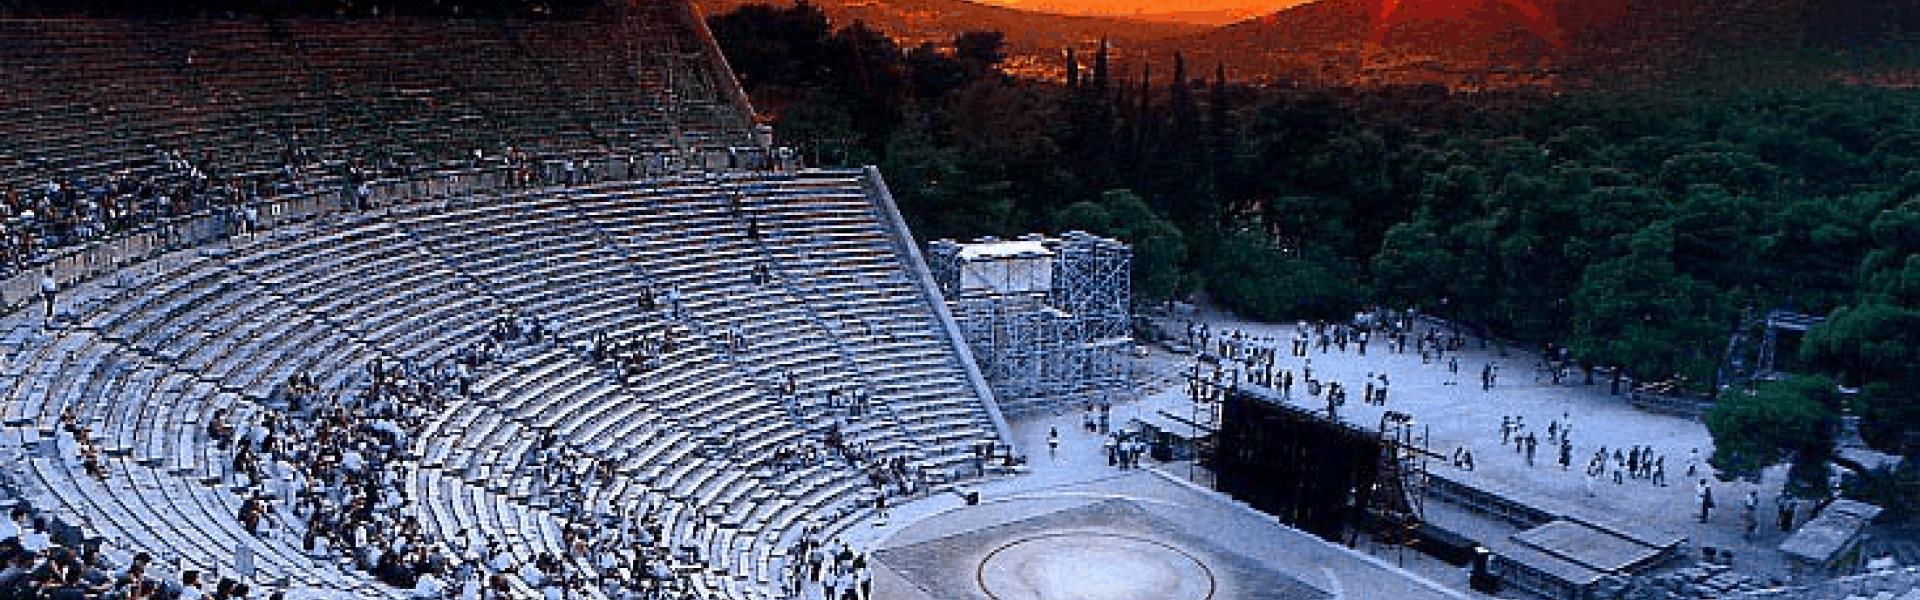 Epidavros Theatre - Trips Nearby Loutraki